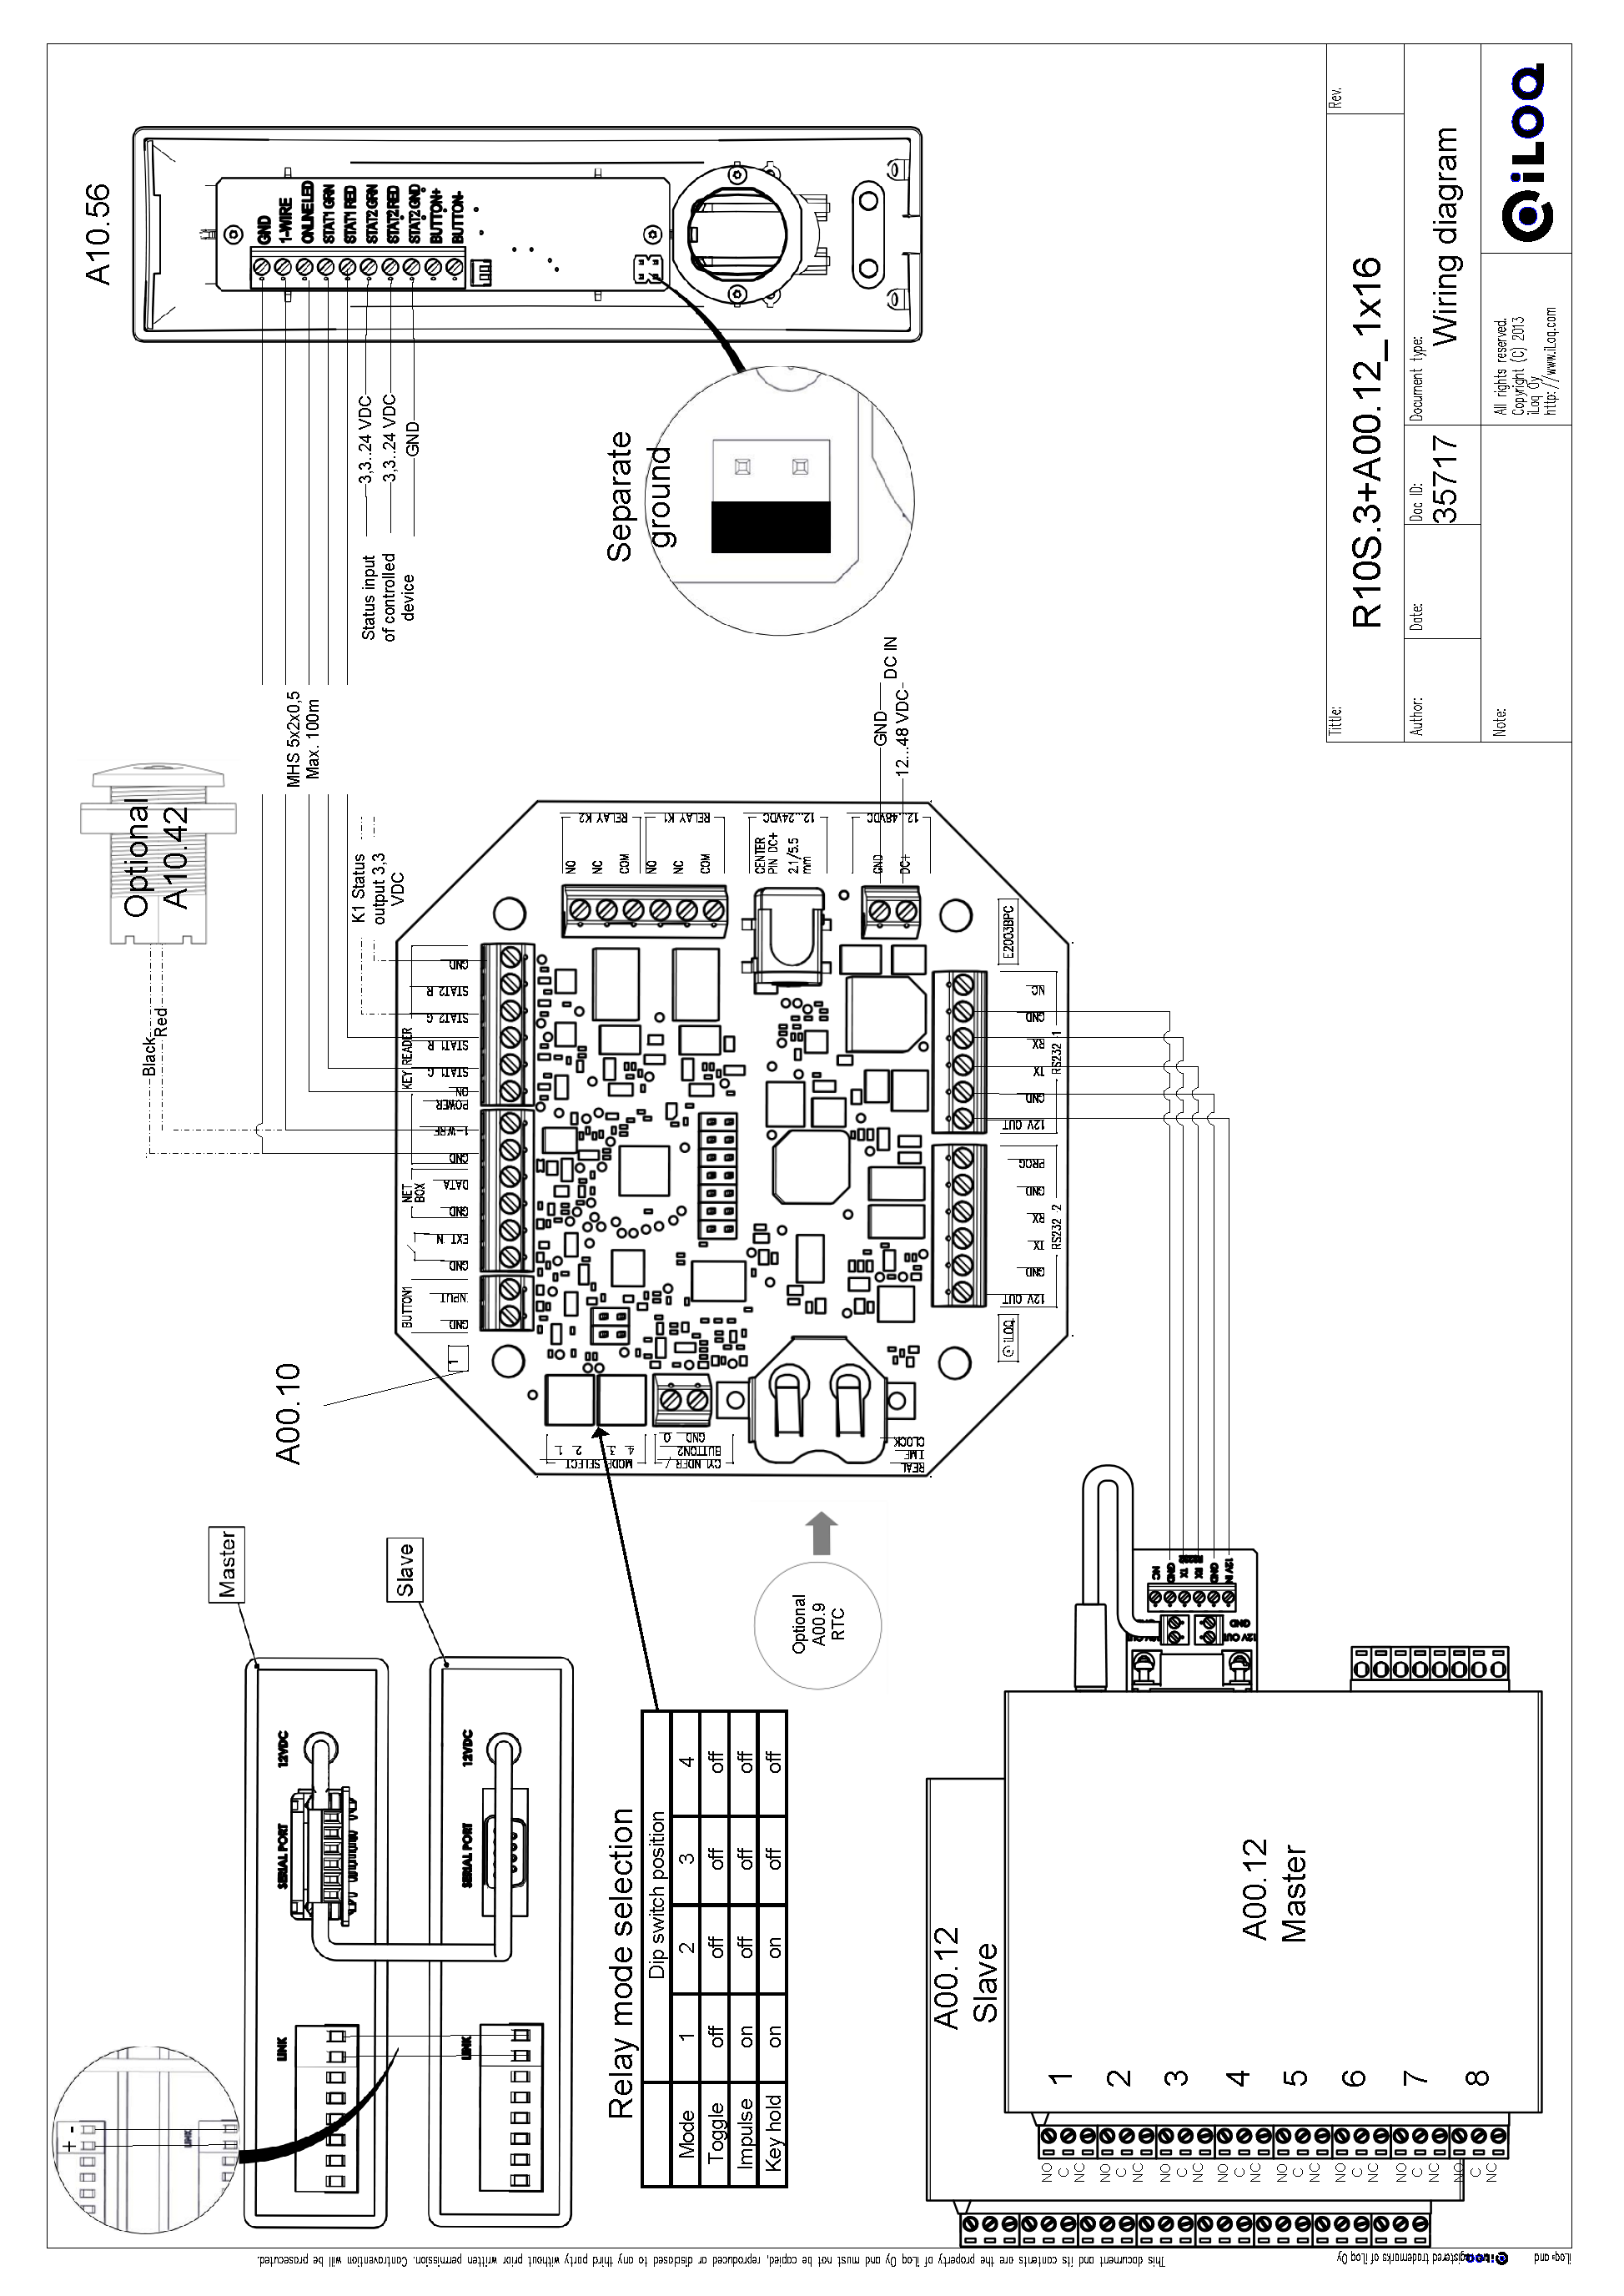 Kytkentäkaavio R10S.3 A00.12 1x16 -konfiguraatiolle